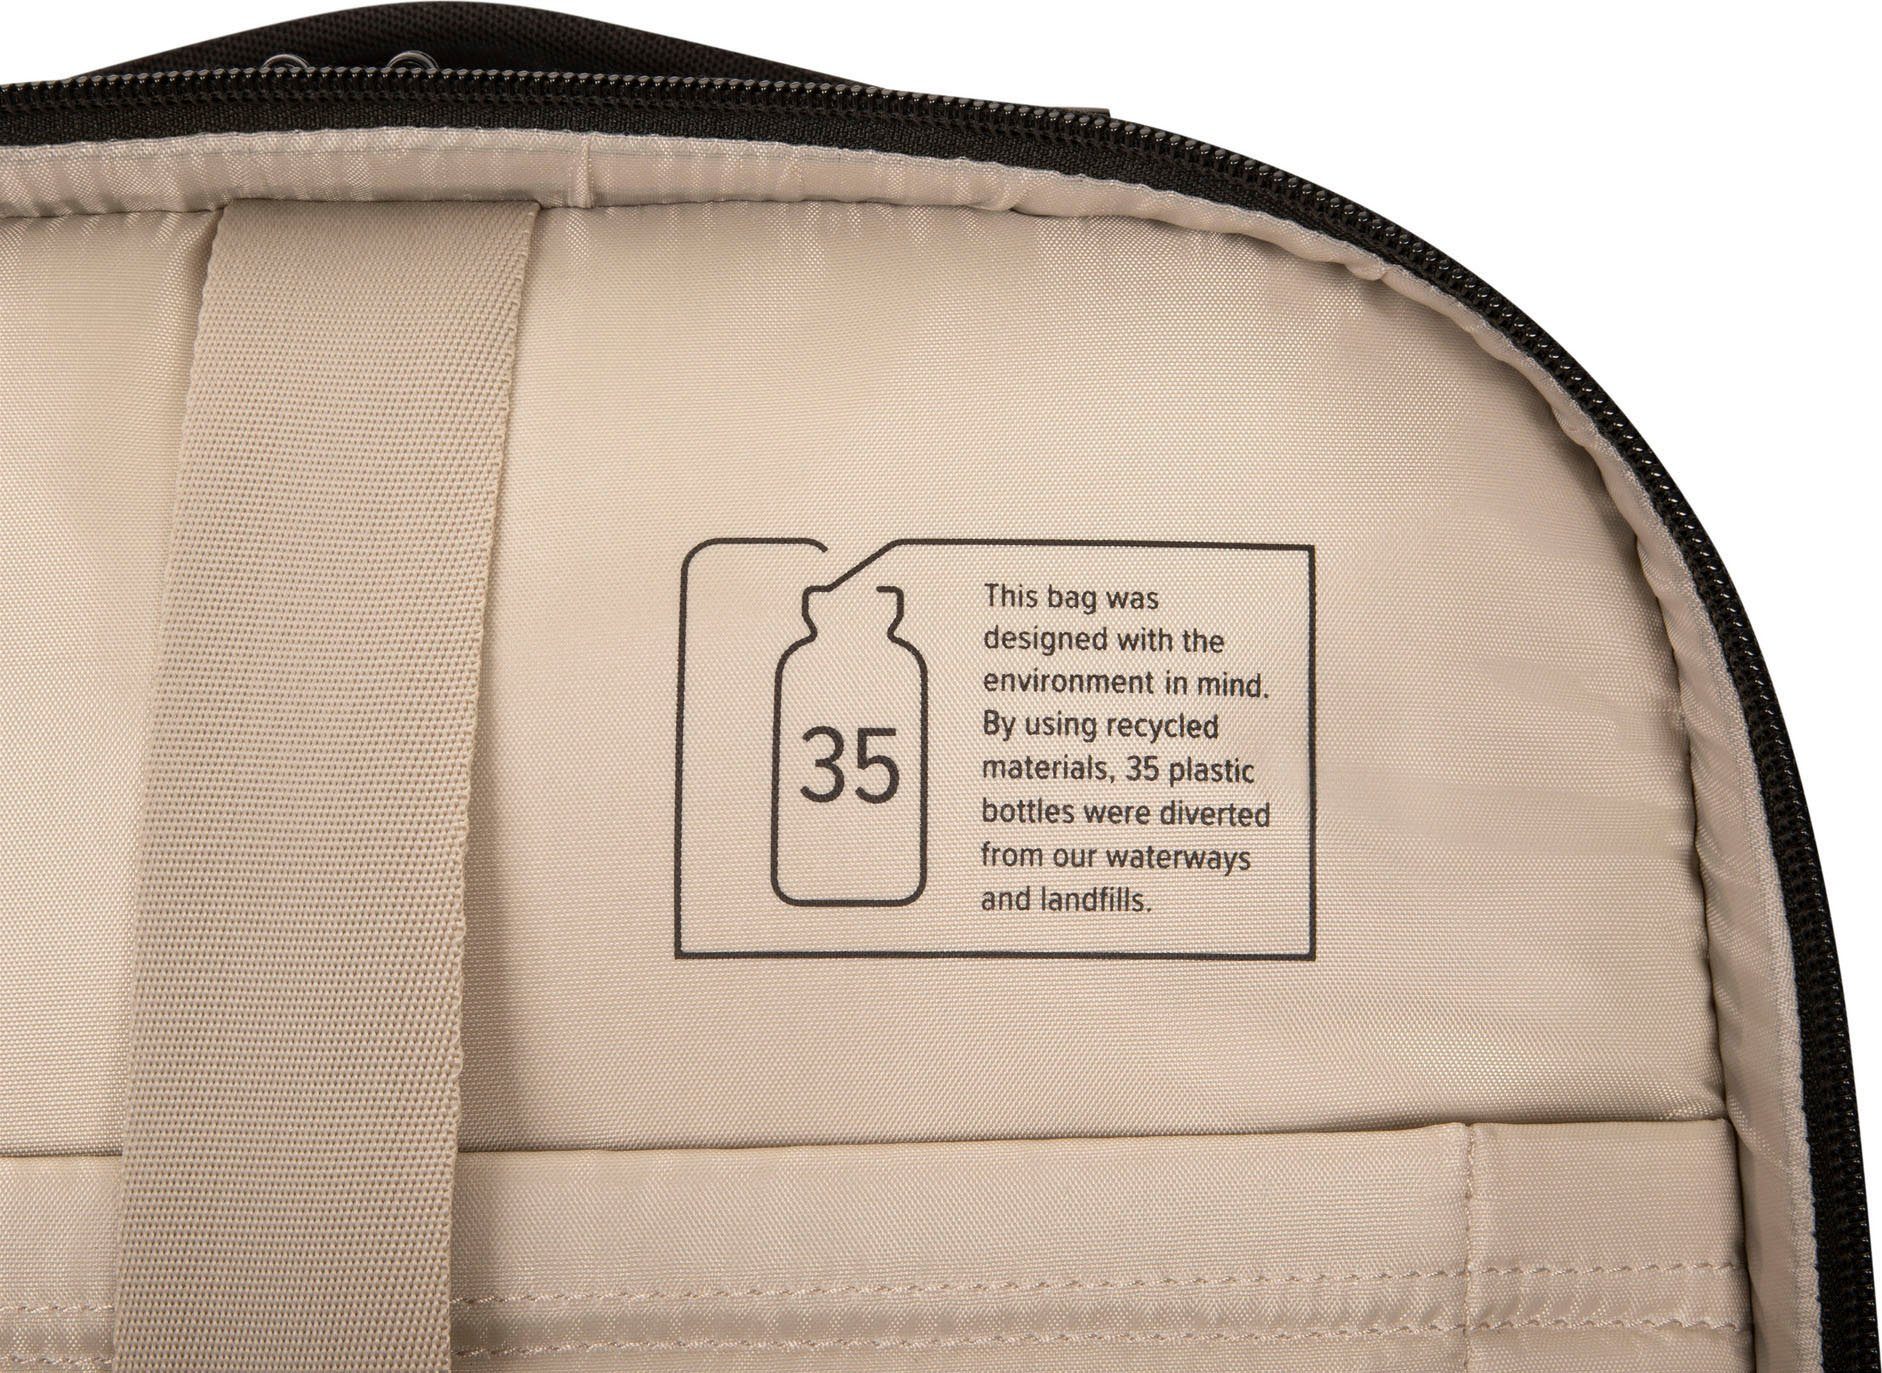 Traveller Mobile Targus Tech Rolling 15.6 Backpack Laptoptasche